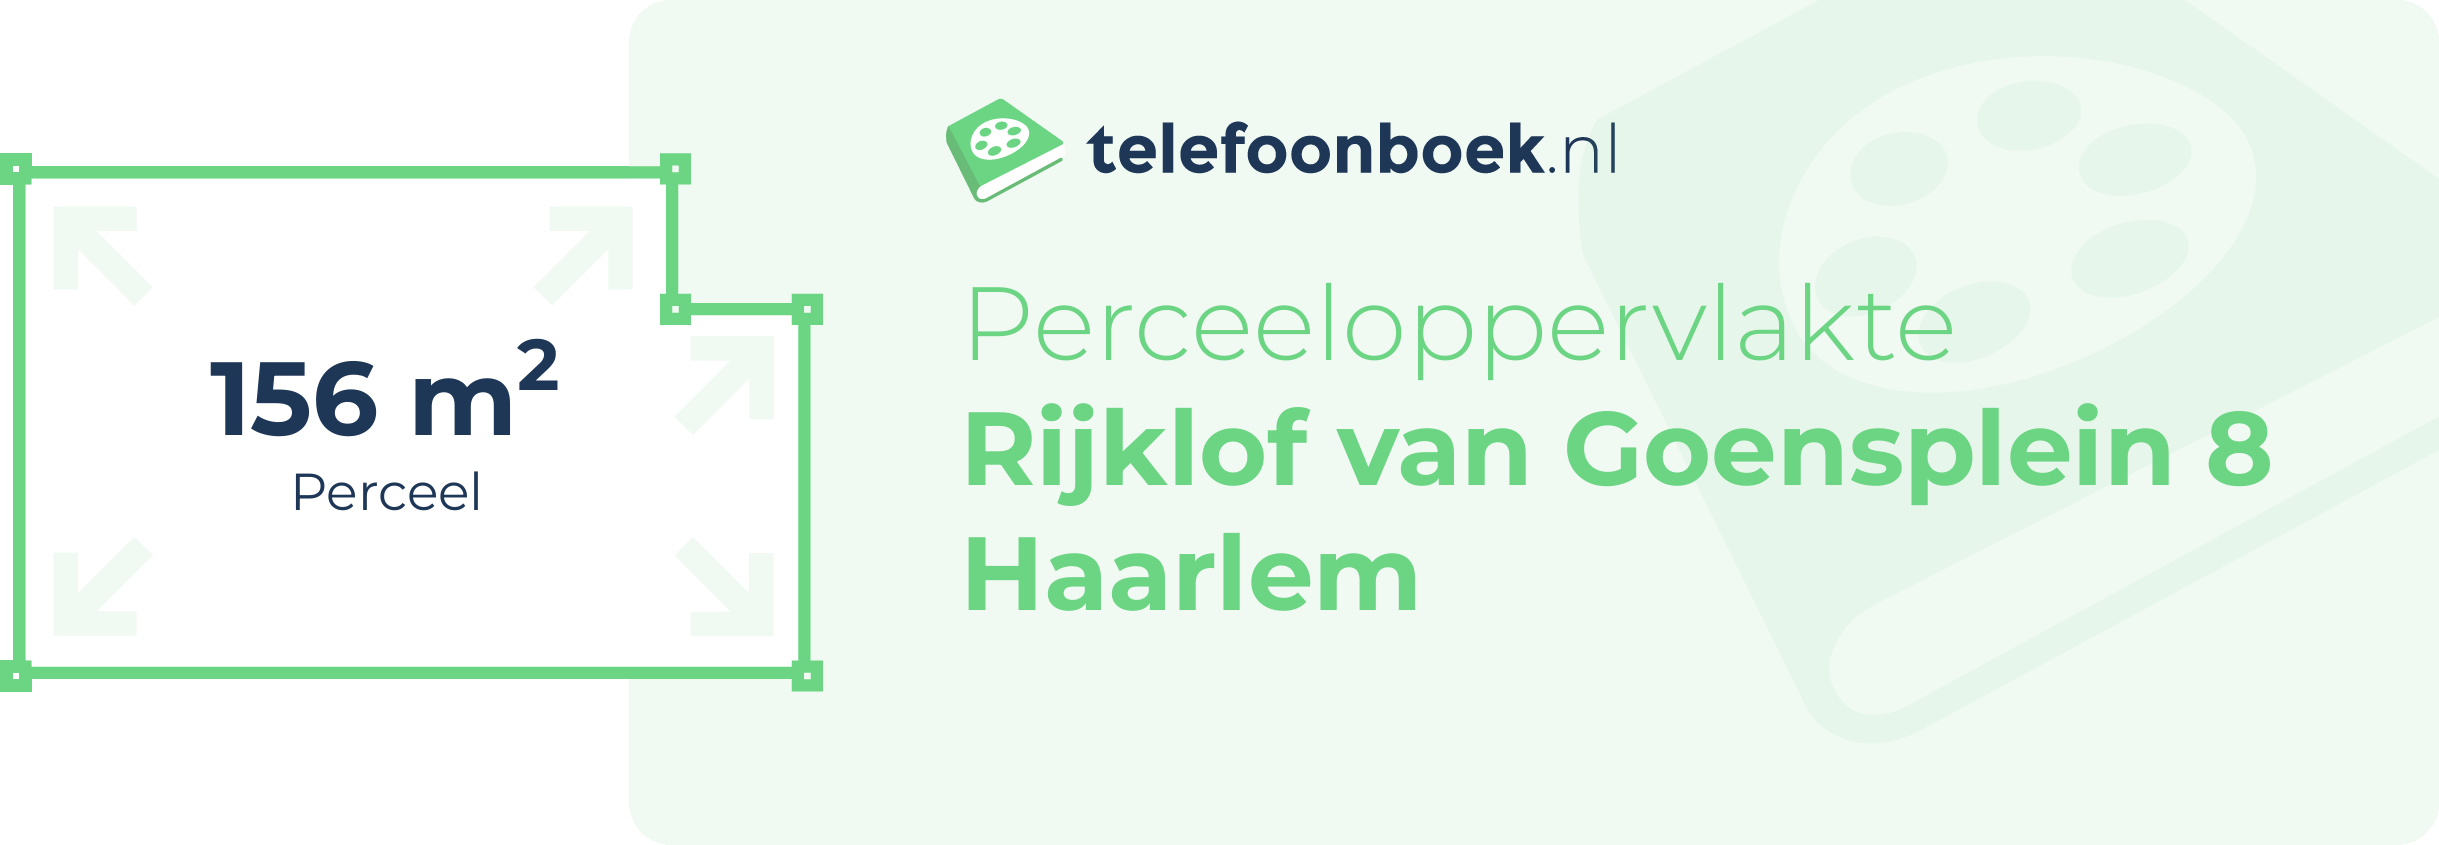 Perceeloppervlakte Rijklof Van Goensplein 8 Haarlem